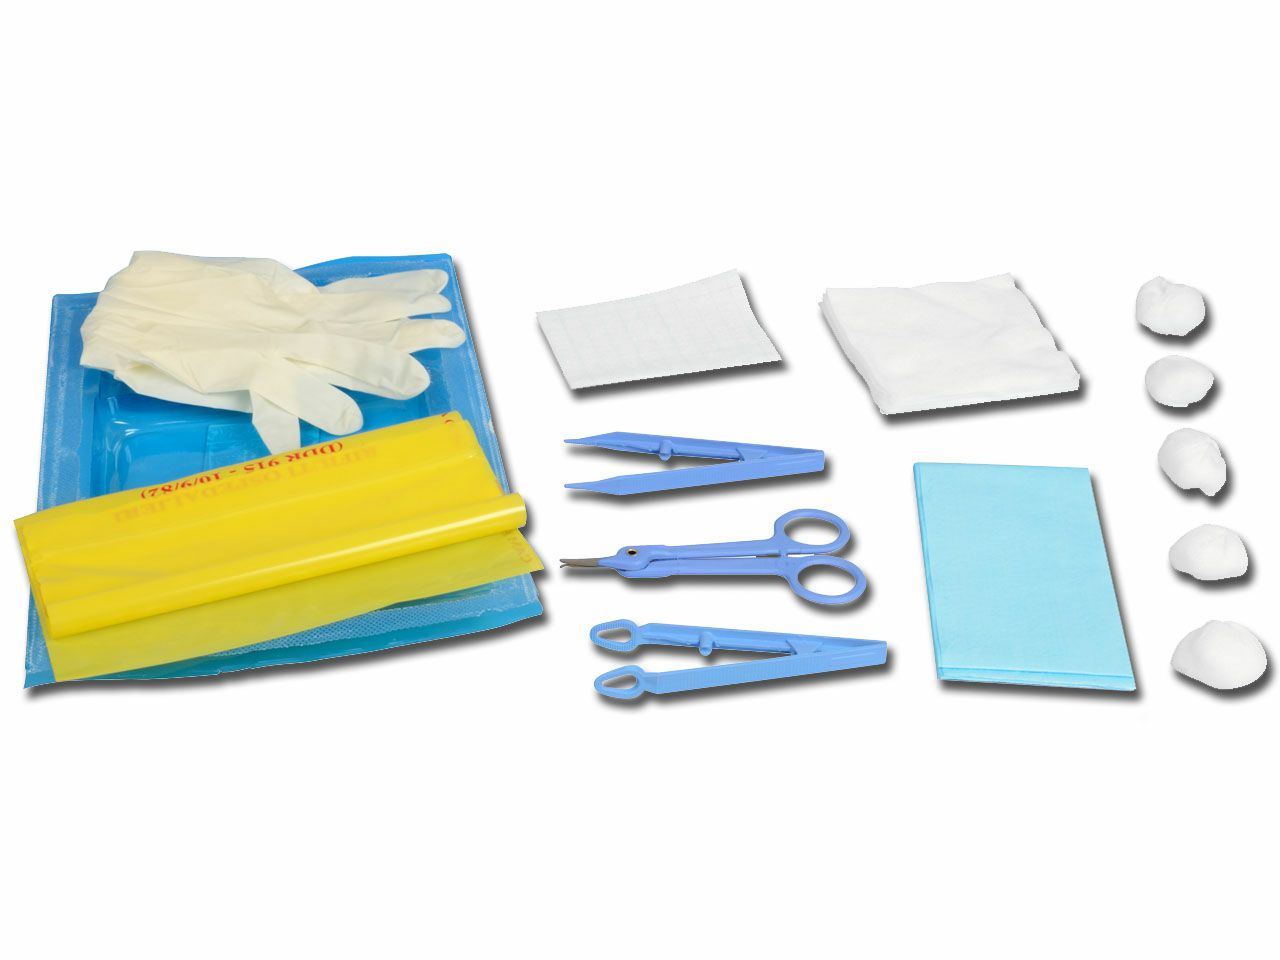 suture-removal-kit-3-sterilno-26932_1.jpg